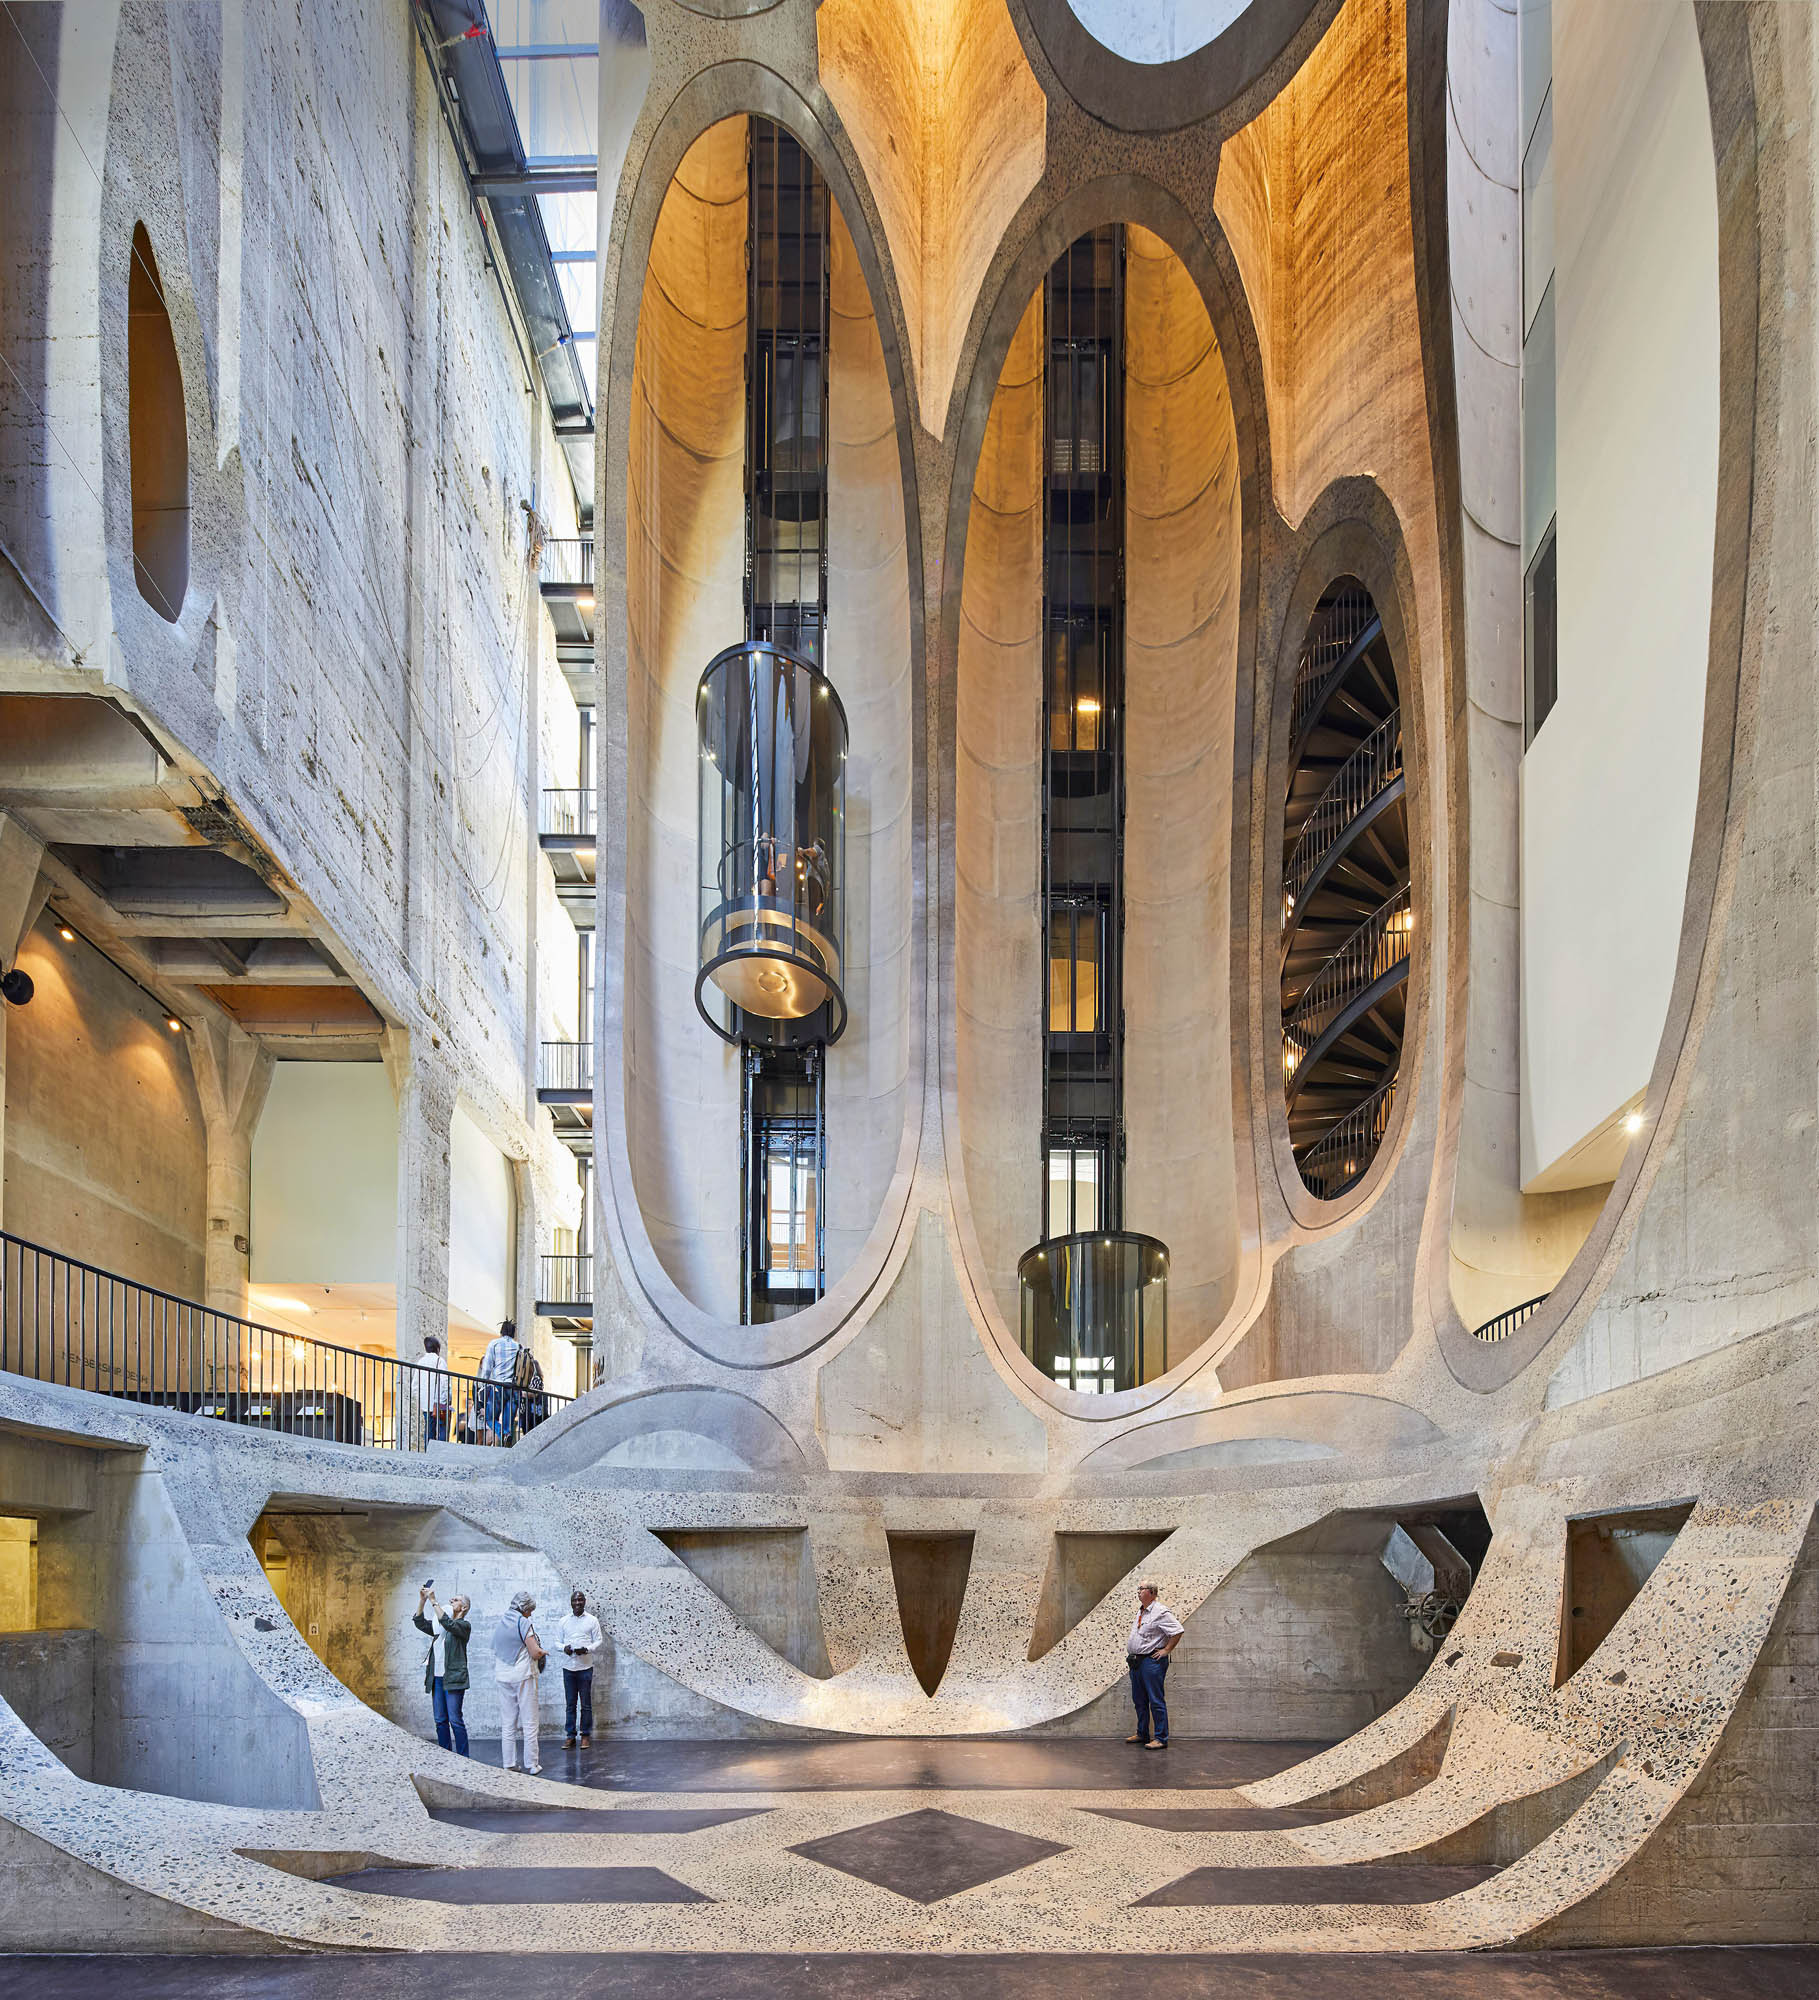 Das Zeitz MOCAA hat etwas von einem Sakralbau, der manche Besucher ein wenig an das Innere von Gaudís La Sagrada Família in Barcelona erinnert.